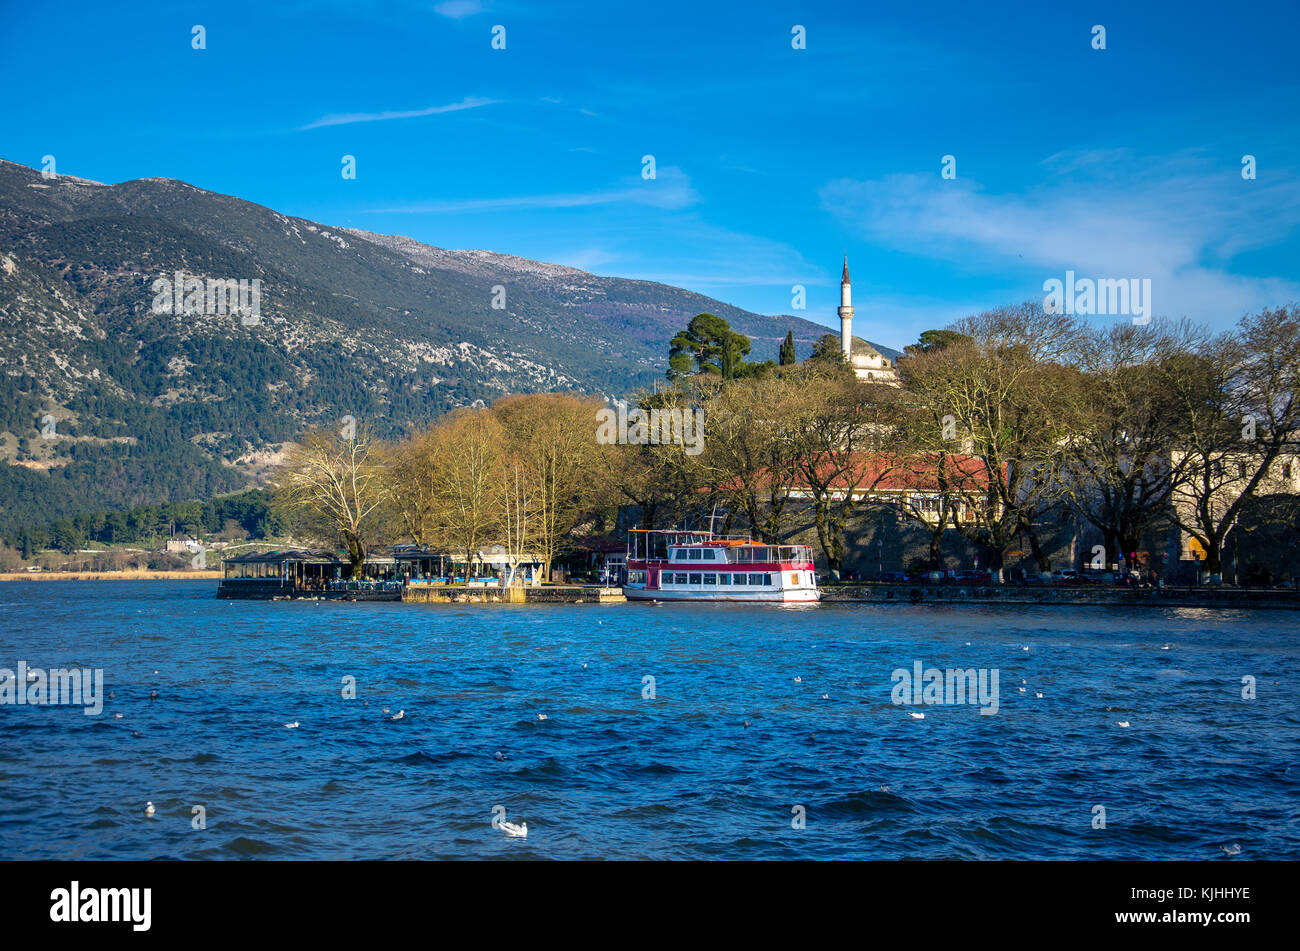 Stadt Ioannina in Griechenland. Blick auf den See und die Moschee von aslan Pasa cami mit Möwen und Schwäne. Stockfoto